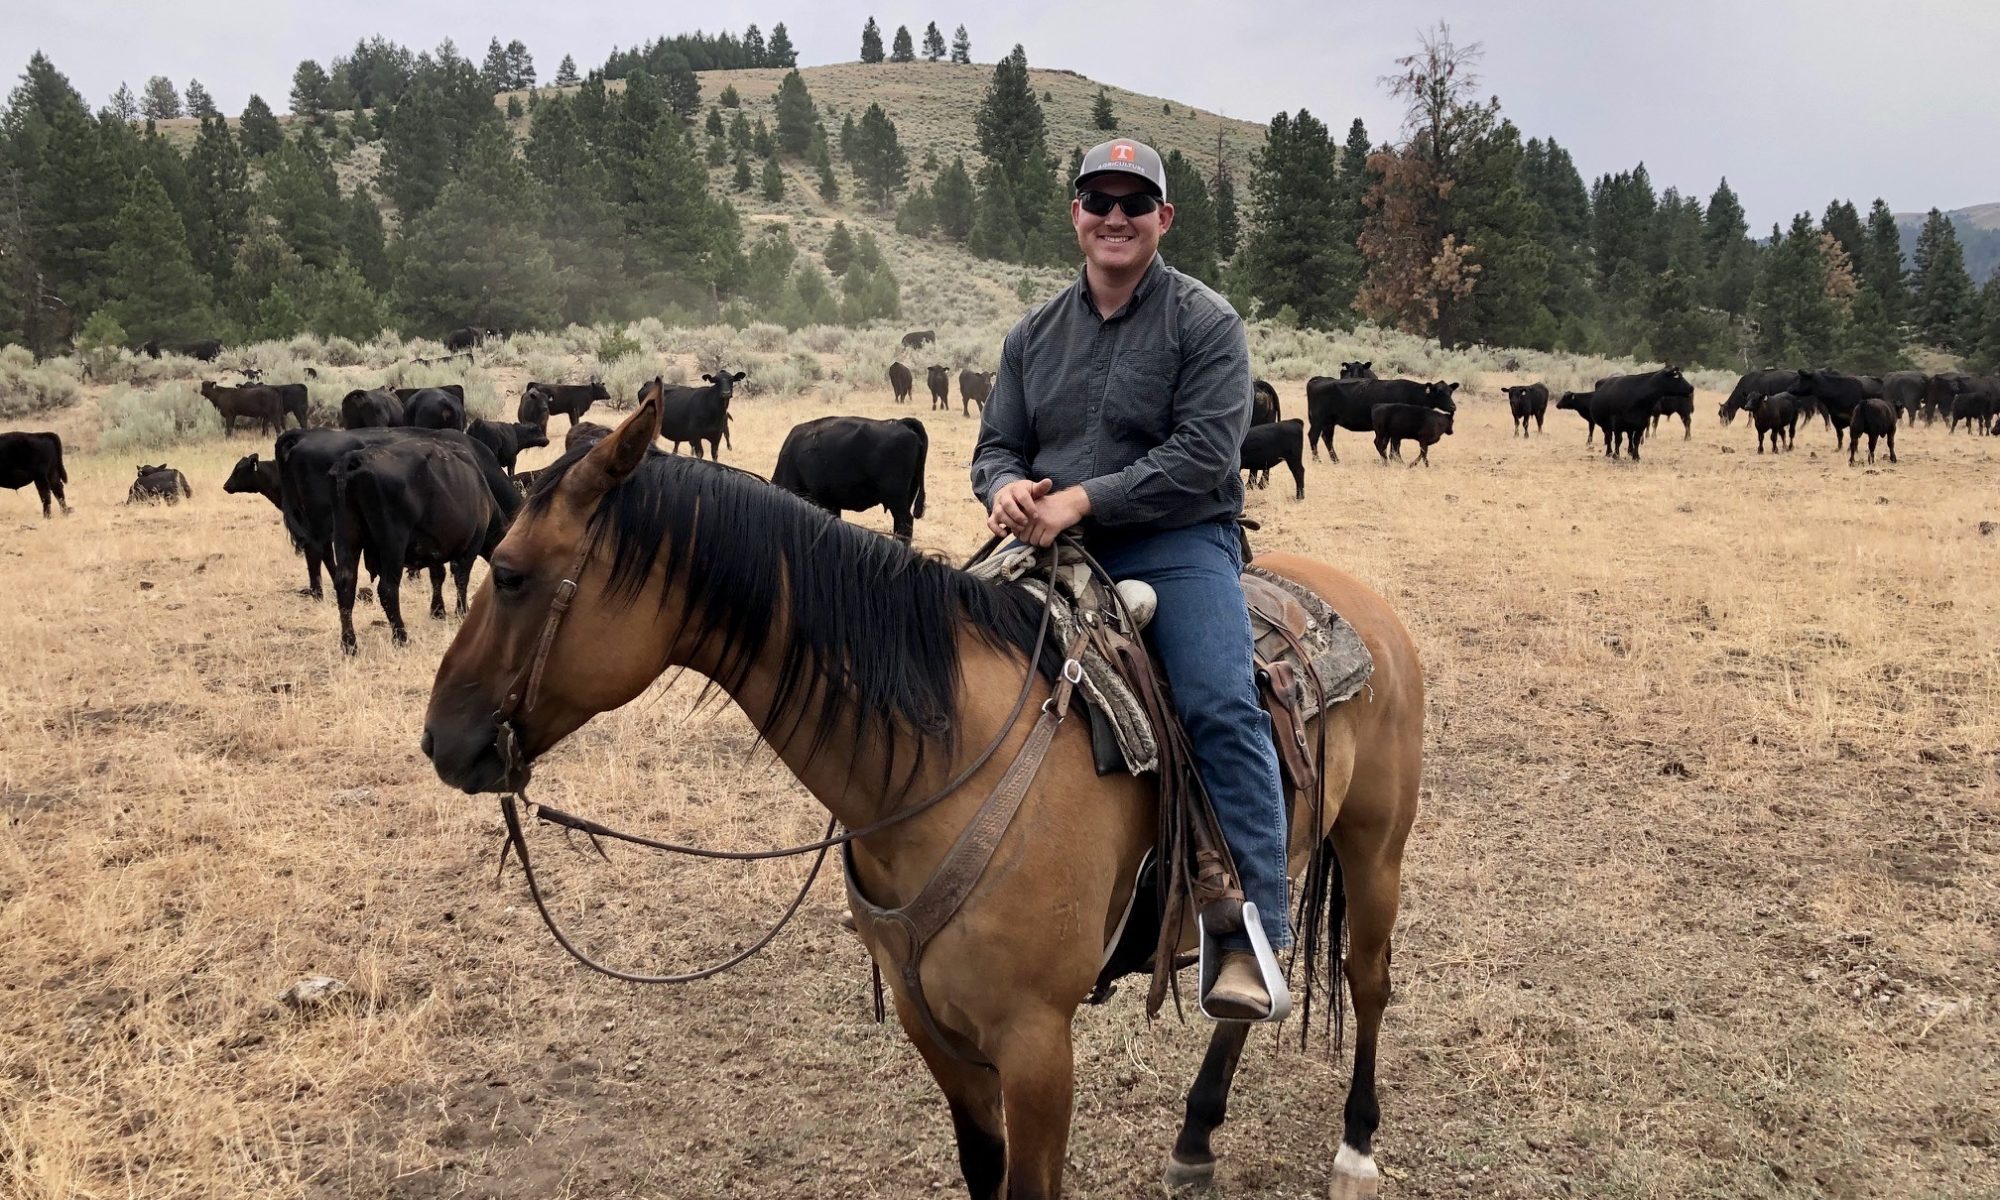 Ian Kane on horseback in field of black cattle